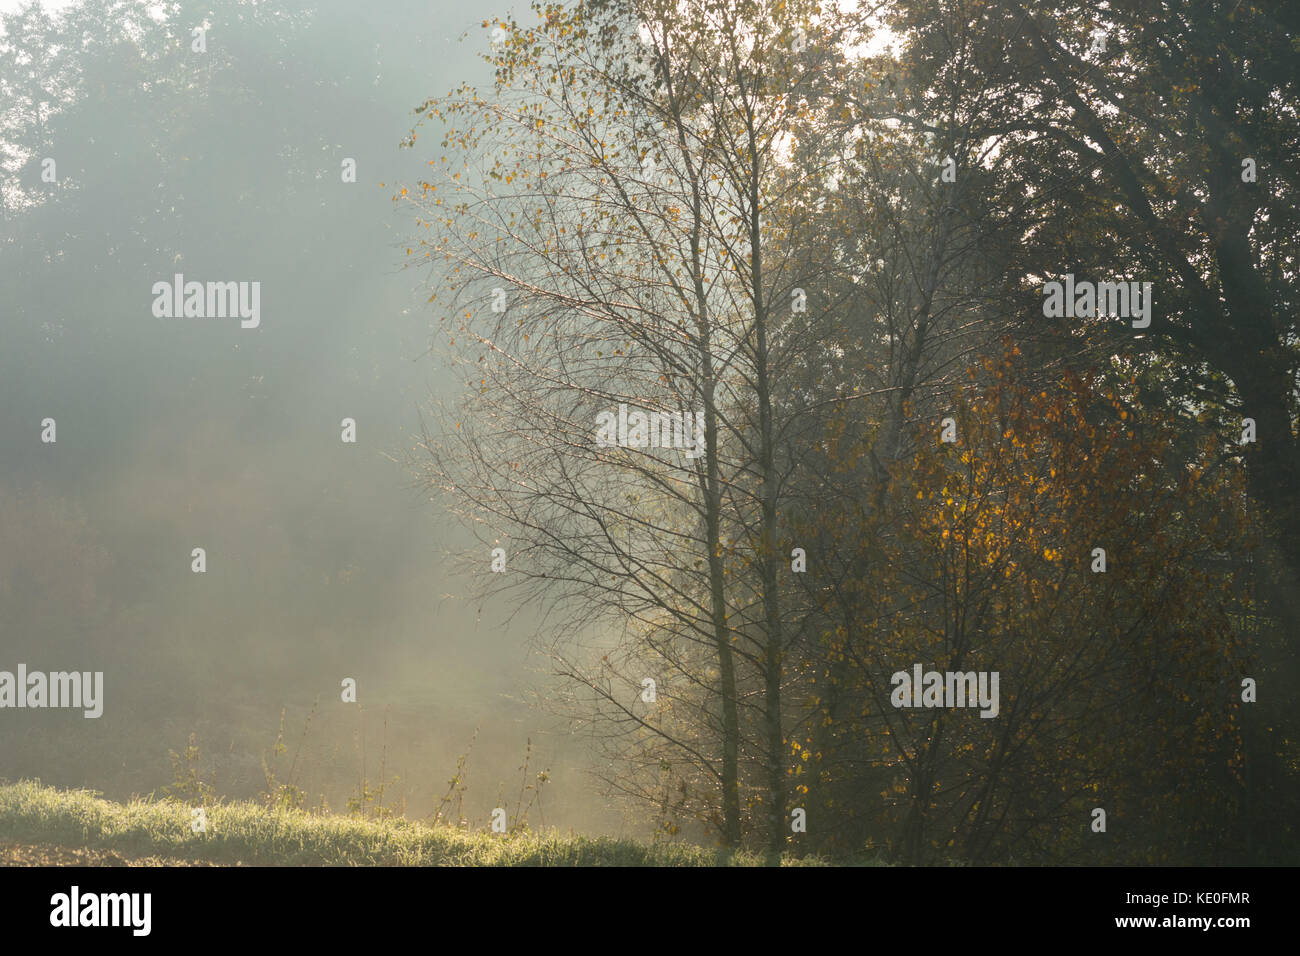 Natura 2000, Głębowice, Pologne, Europe, 17 Oct, 2017. Cela va être une très belle journée chaude d'automne, malgré le matin brumeux. Il n'y a pas de nuage dans le ciel, bleu ciel. Le soleil levant éclaire magnifiquement les feuilles d'automne sur les arbres. Credit : w124merc / Alamy Live News Banque D'Images